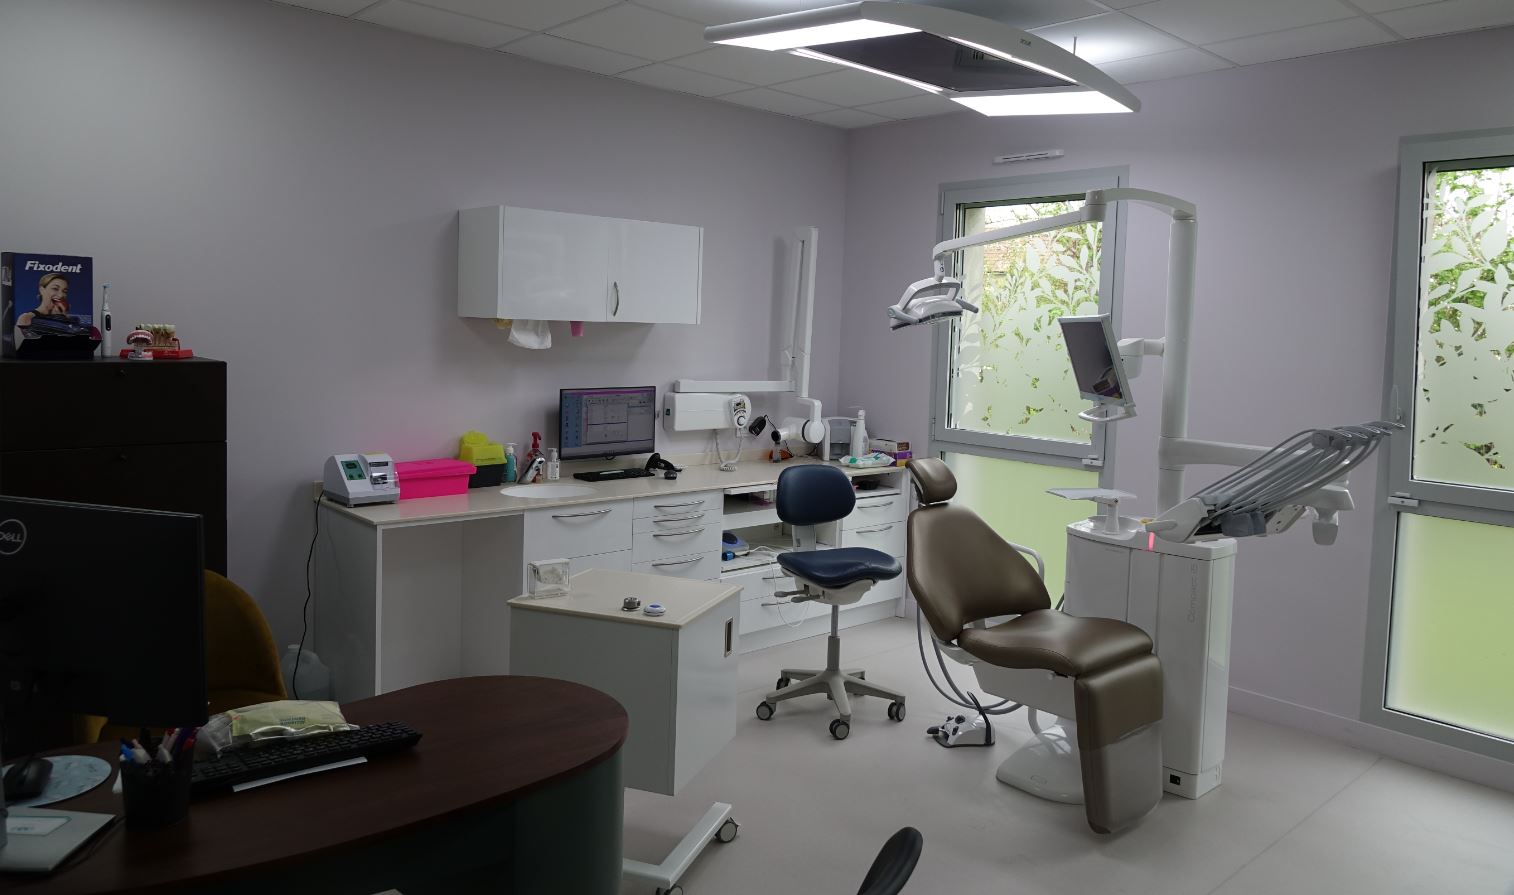 Le cabinet dentaire est composé de 3 salles de soin lumineuses qui donnent envie de s'assoir.